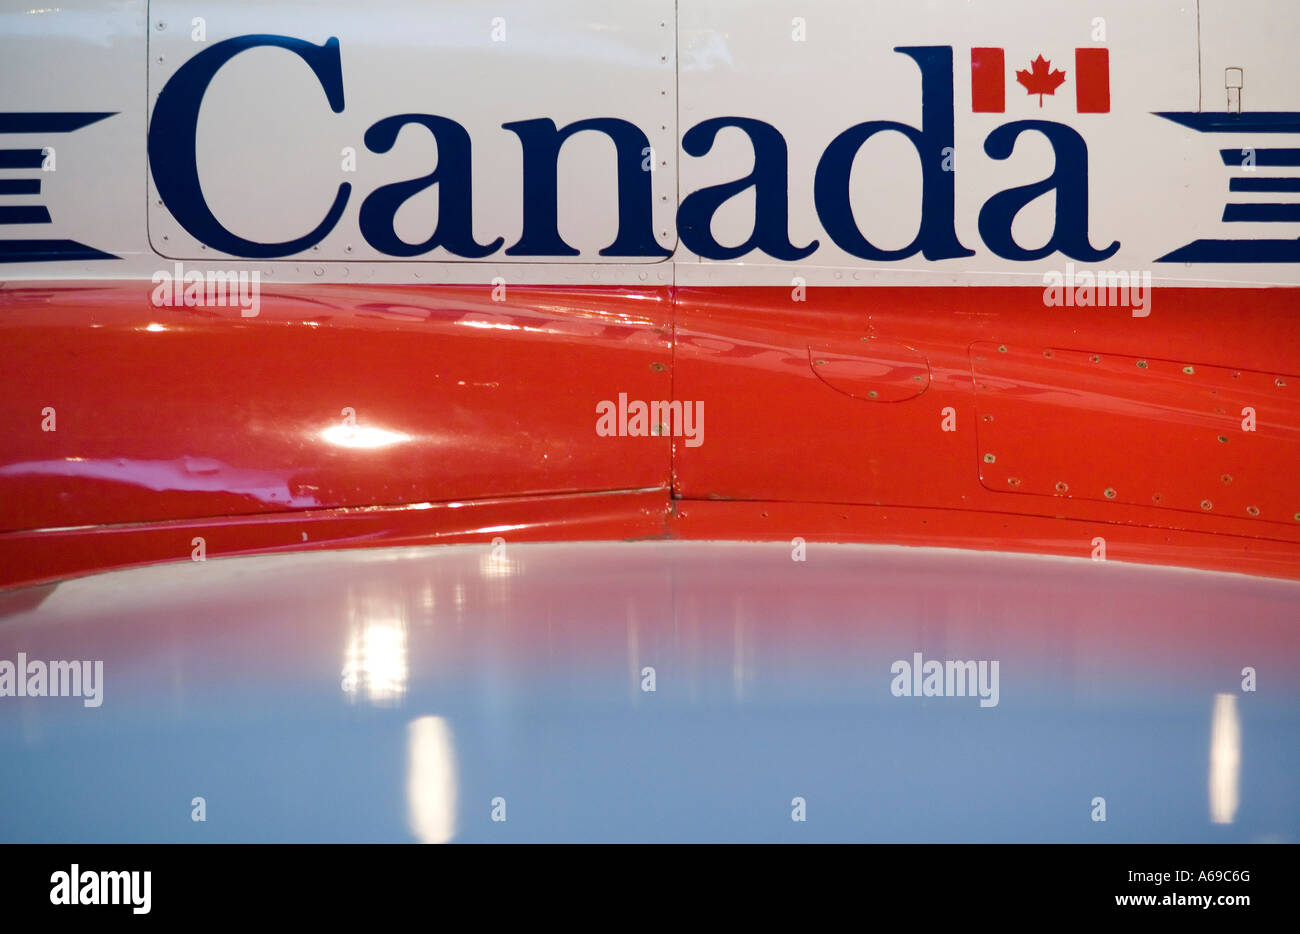 Canada segno sul lato del velivolo vintage. Foto Stock